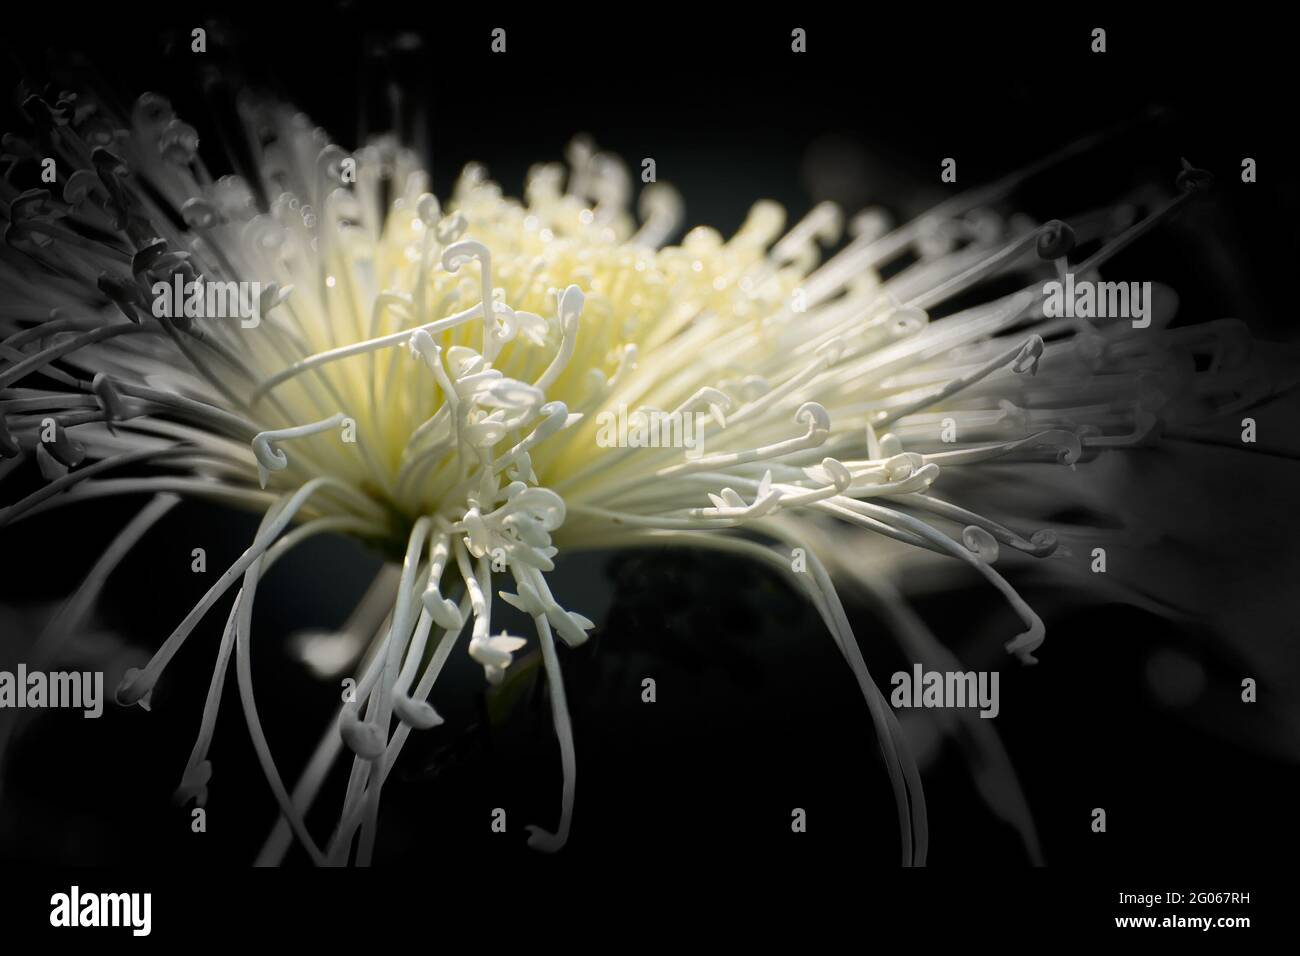 Künstlerisches Blumenbild, weiße Blütenblätter mit dunkelschwarzem kontrastierendem Hintergrund, Naturfoto Stockfoto